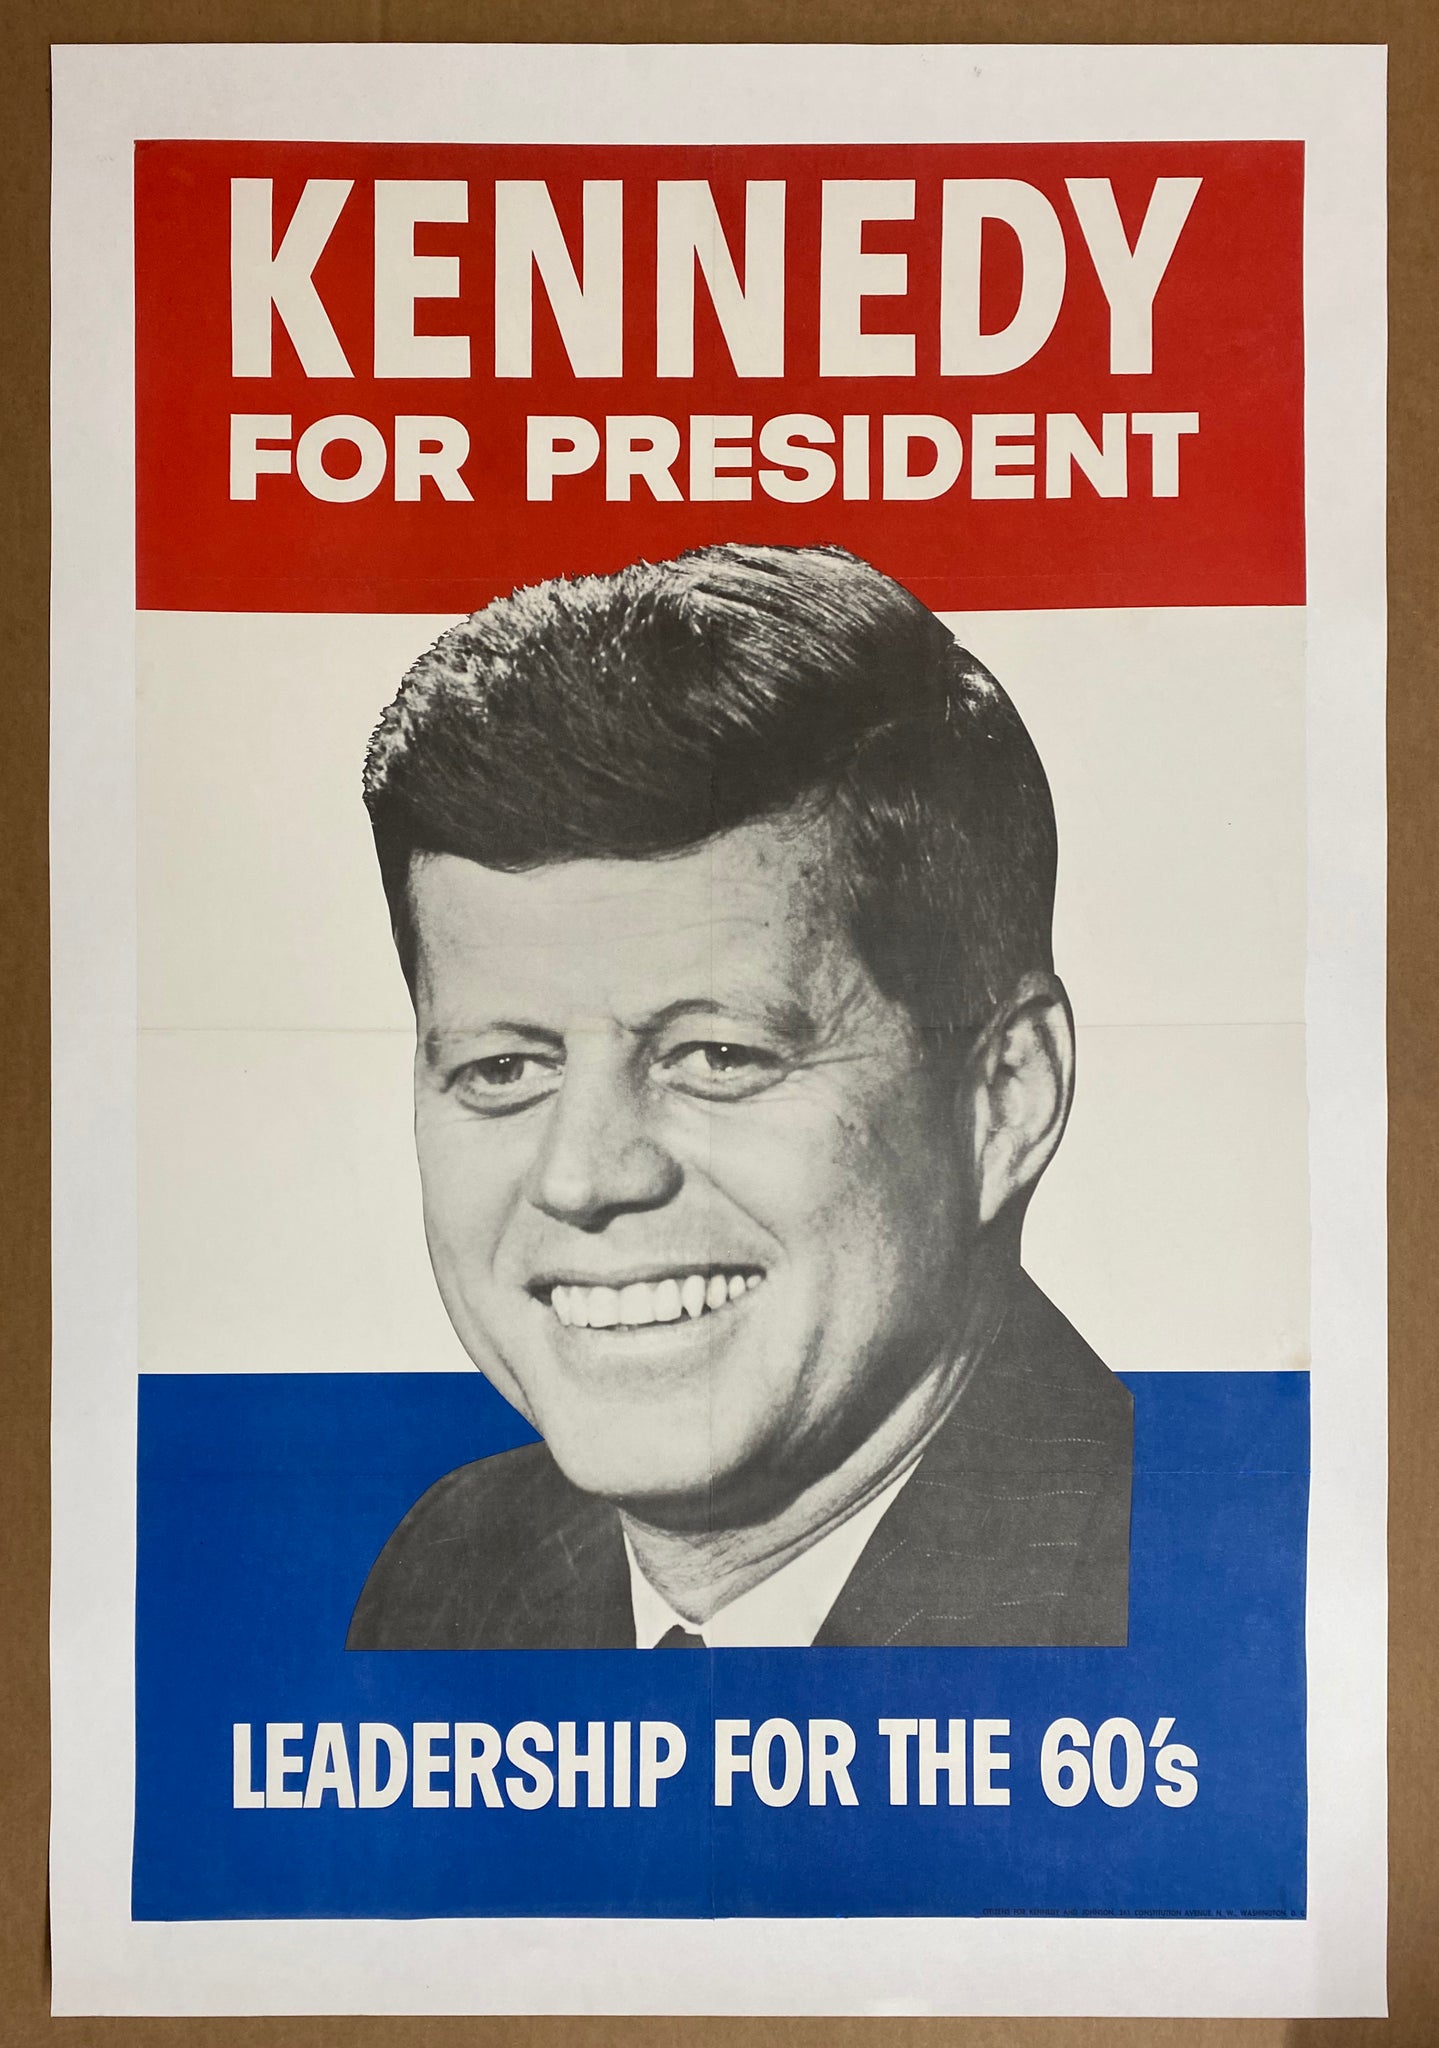 1960 Kennedy For President Leadership For The 60s Full Size on Linen